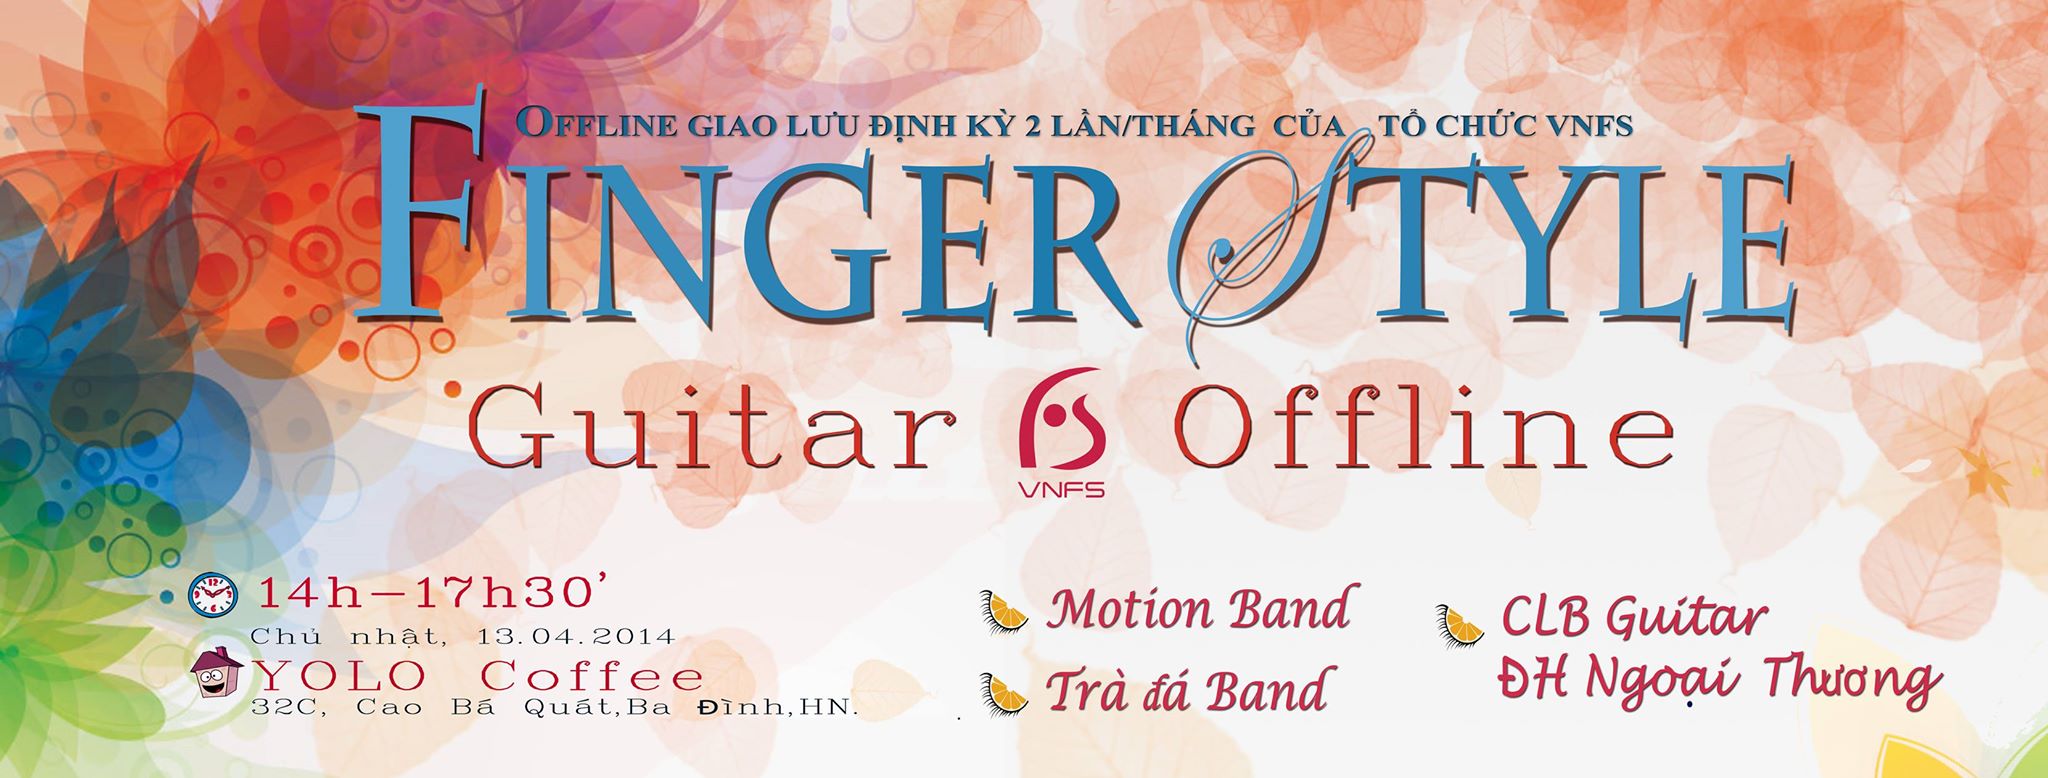 Hanoi Fingerstyle Guitar Offline 4/2014 (1st)